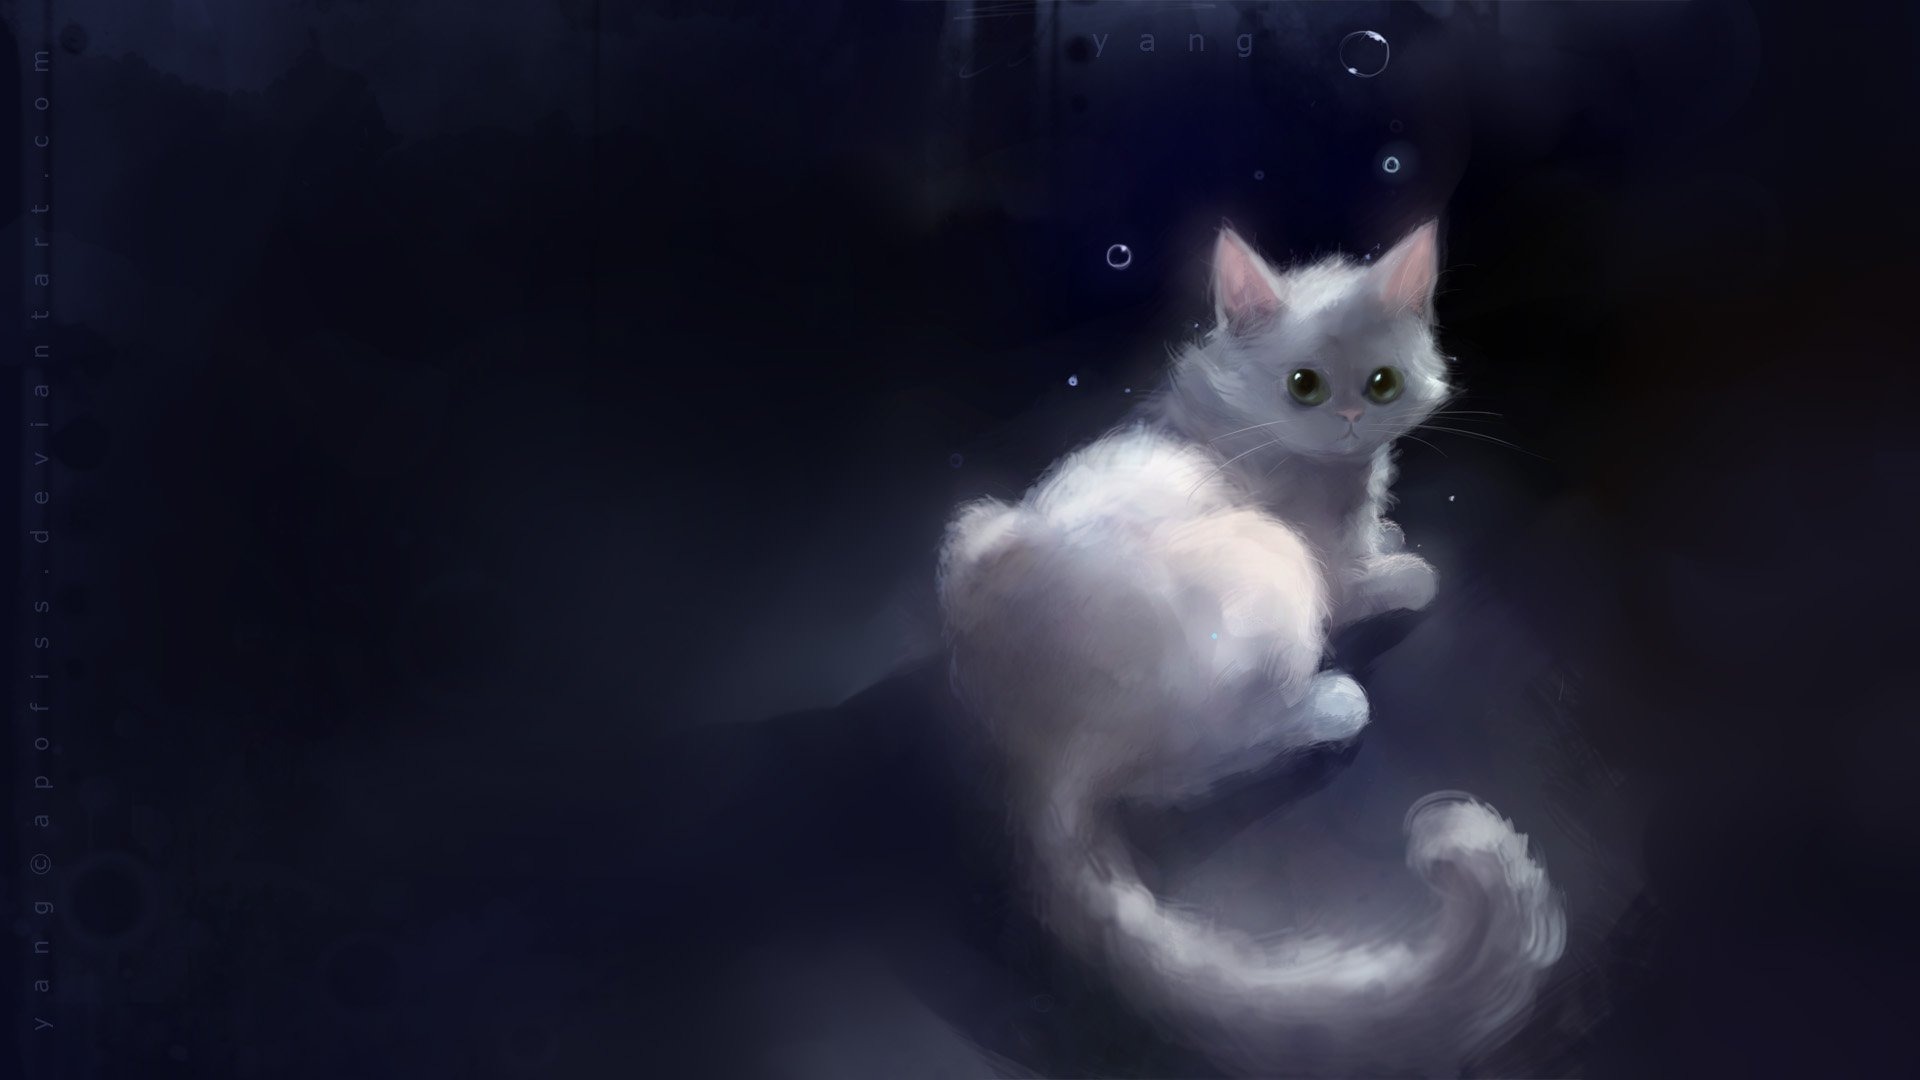 Apofiss 작은 검은 고양이 벽지 수채화 삽화 #20 - 1920x1080